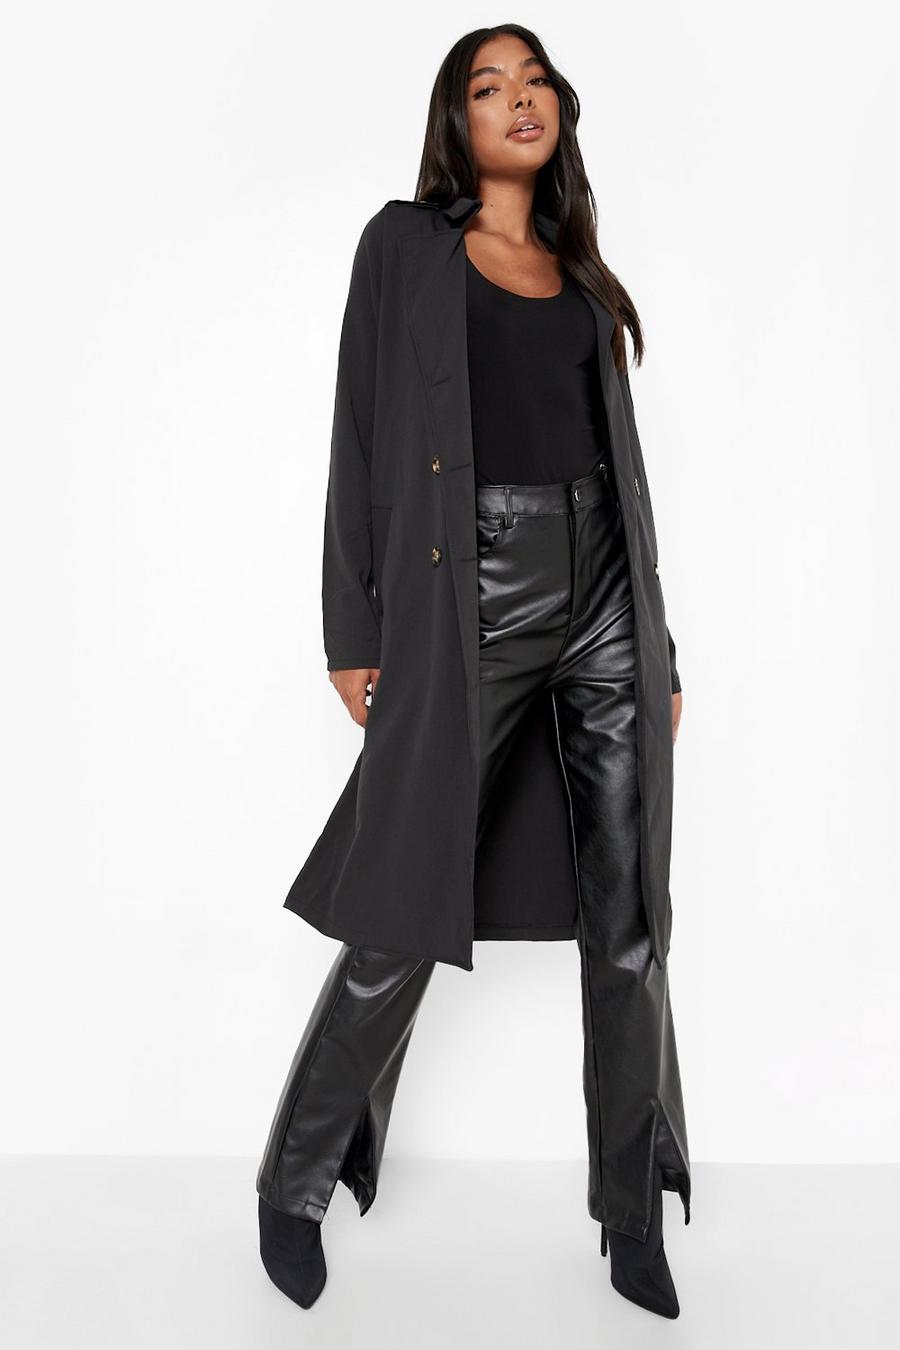 שחור מעיל טרנץ' בסגנון שימושי עם כפתורים לנשים גבוהות image number 1